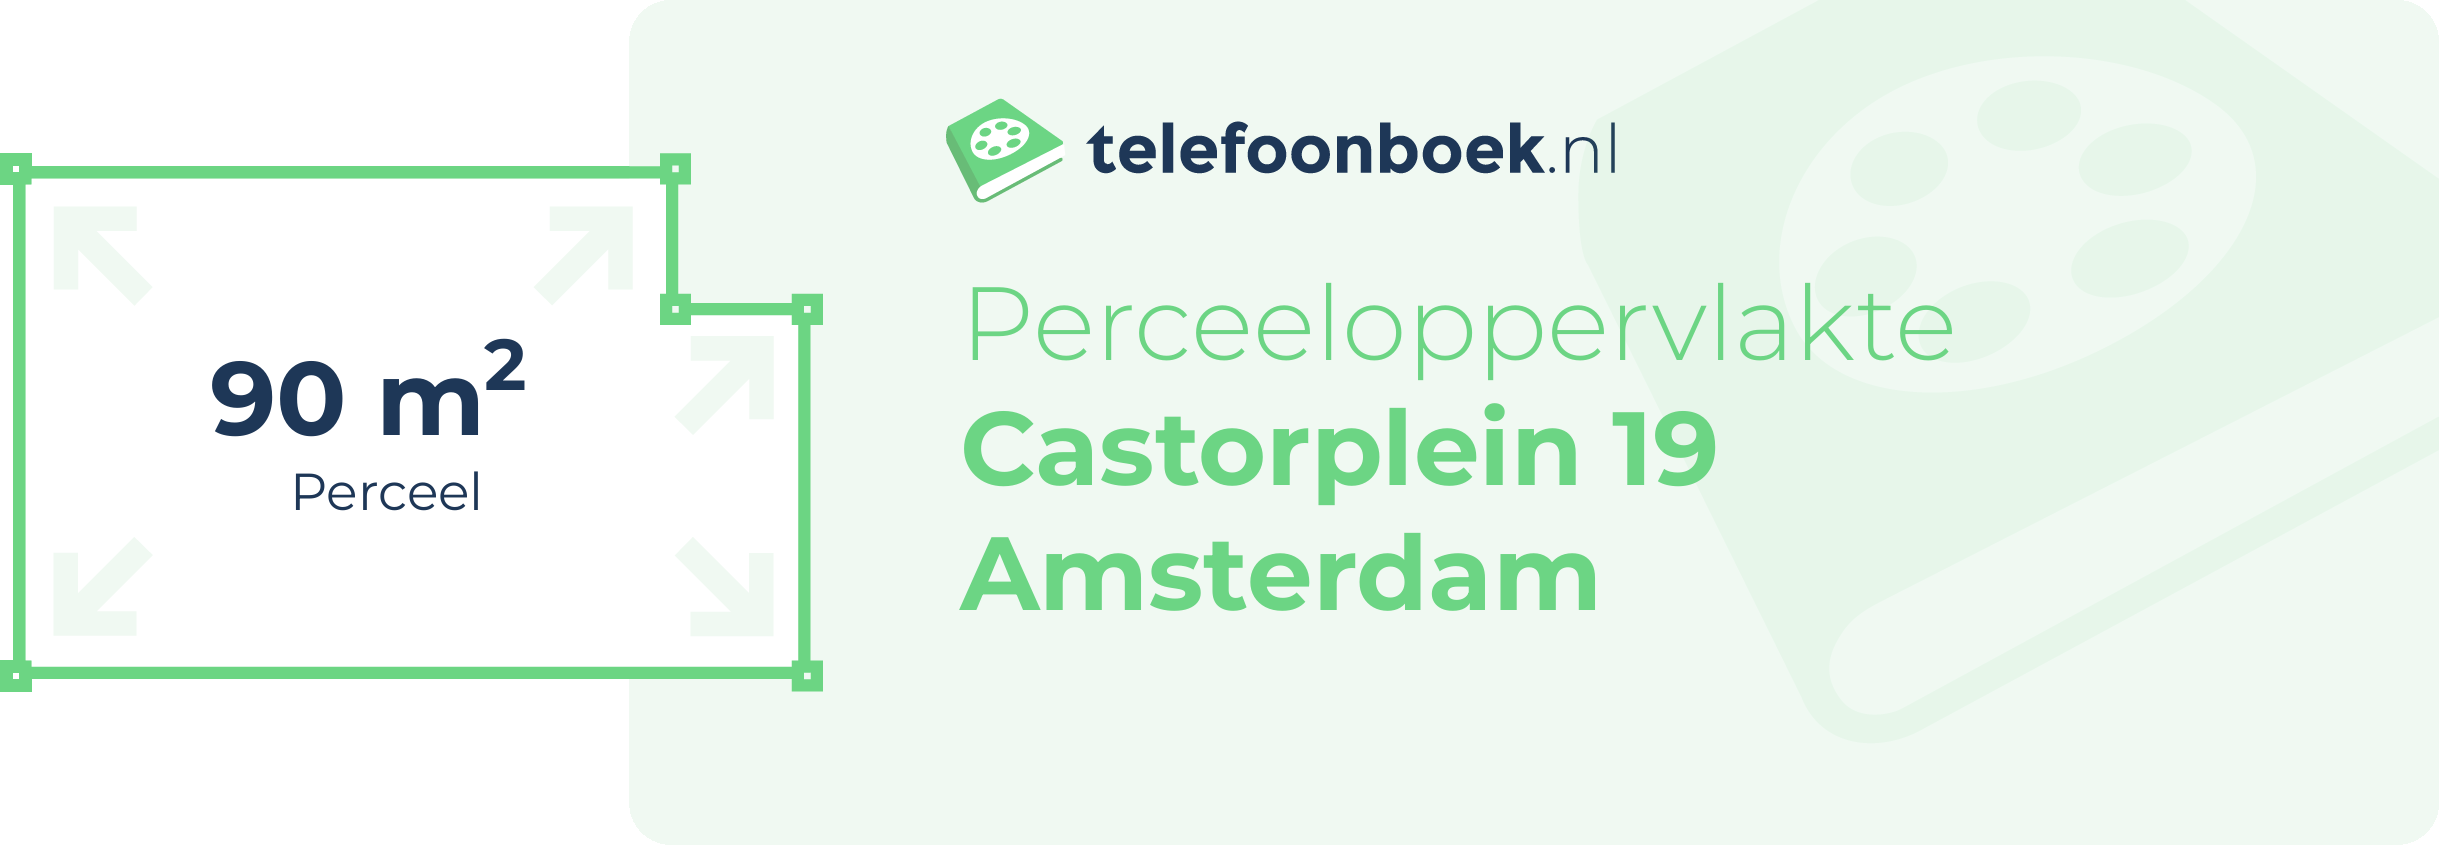 Perceeloppervlakte Castorplein 19 Amsterdam